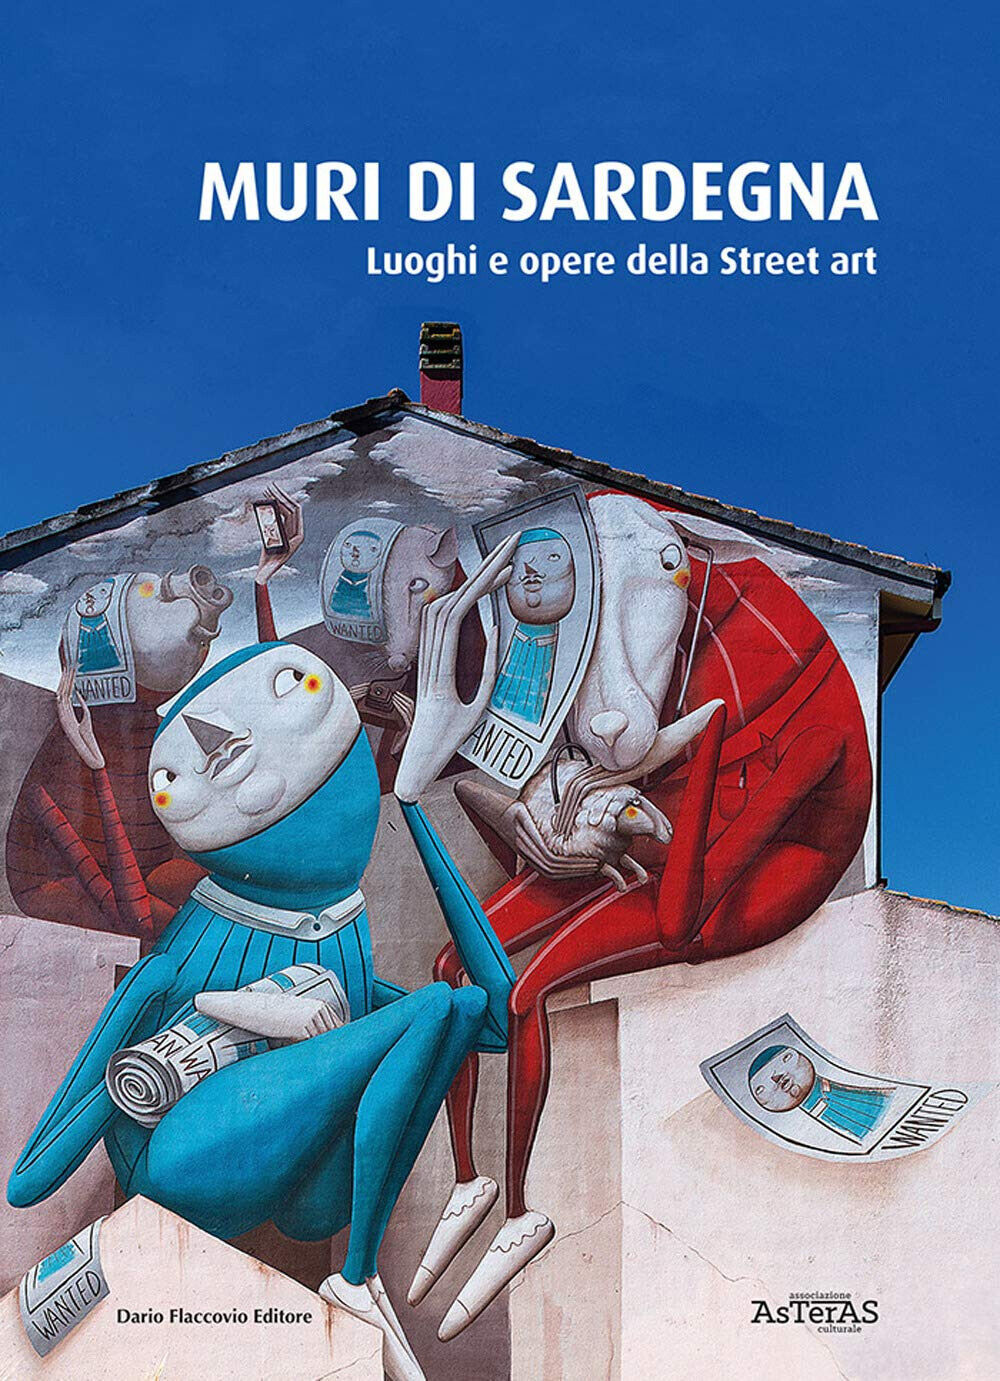 Muri di Sardegna. Luoghi e opere della street art -Asteras - 2020 libro usato